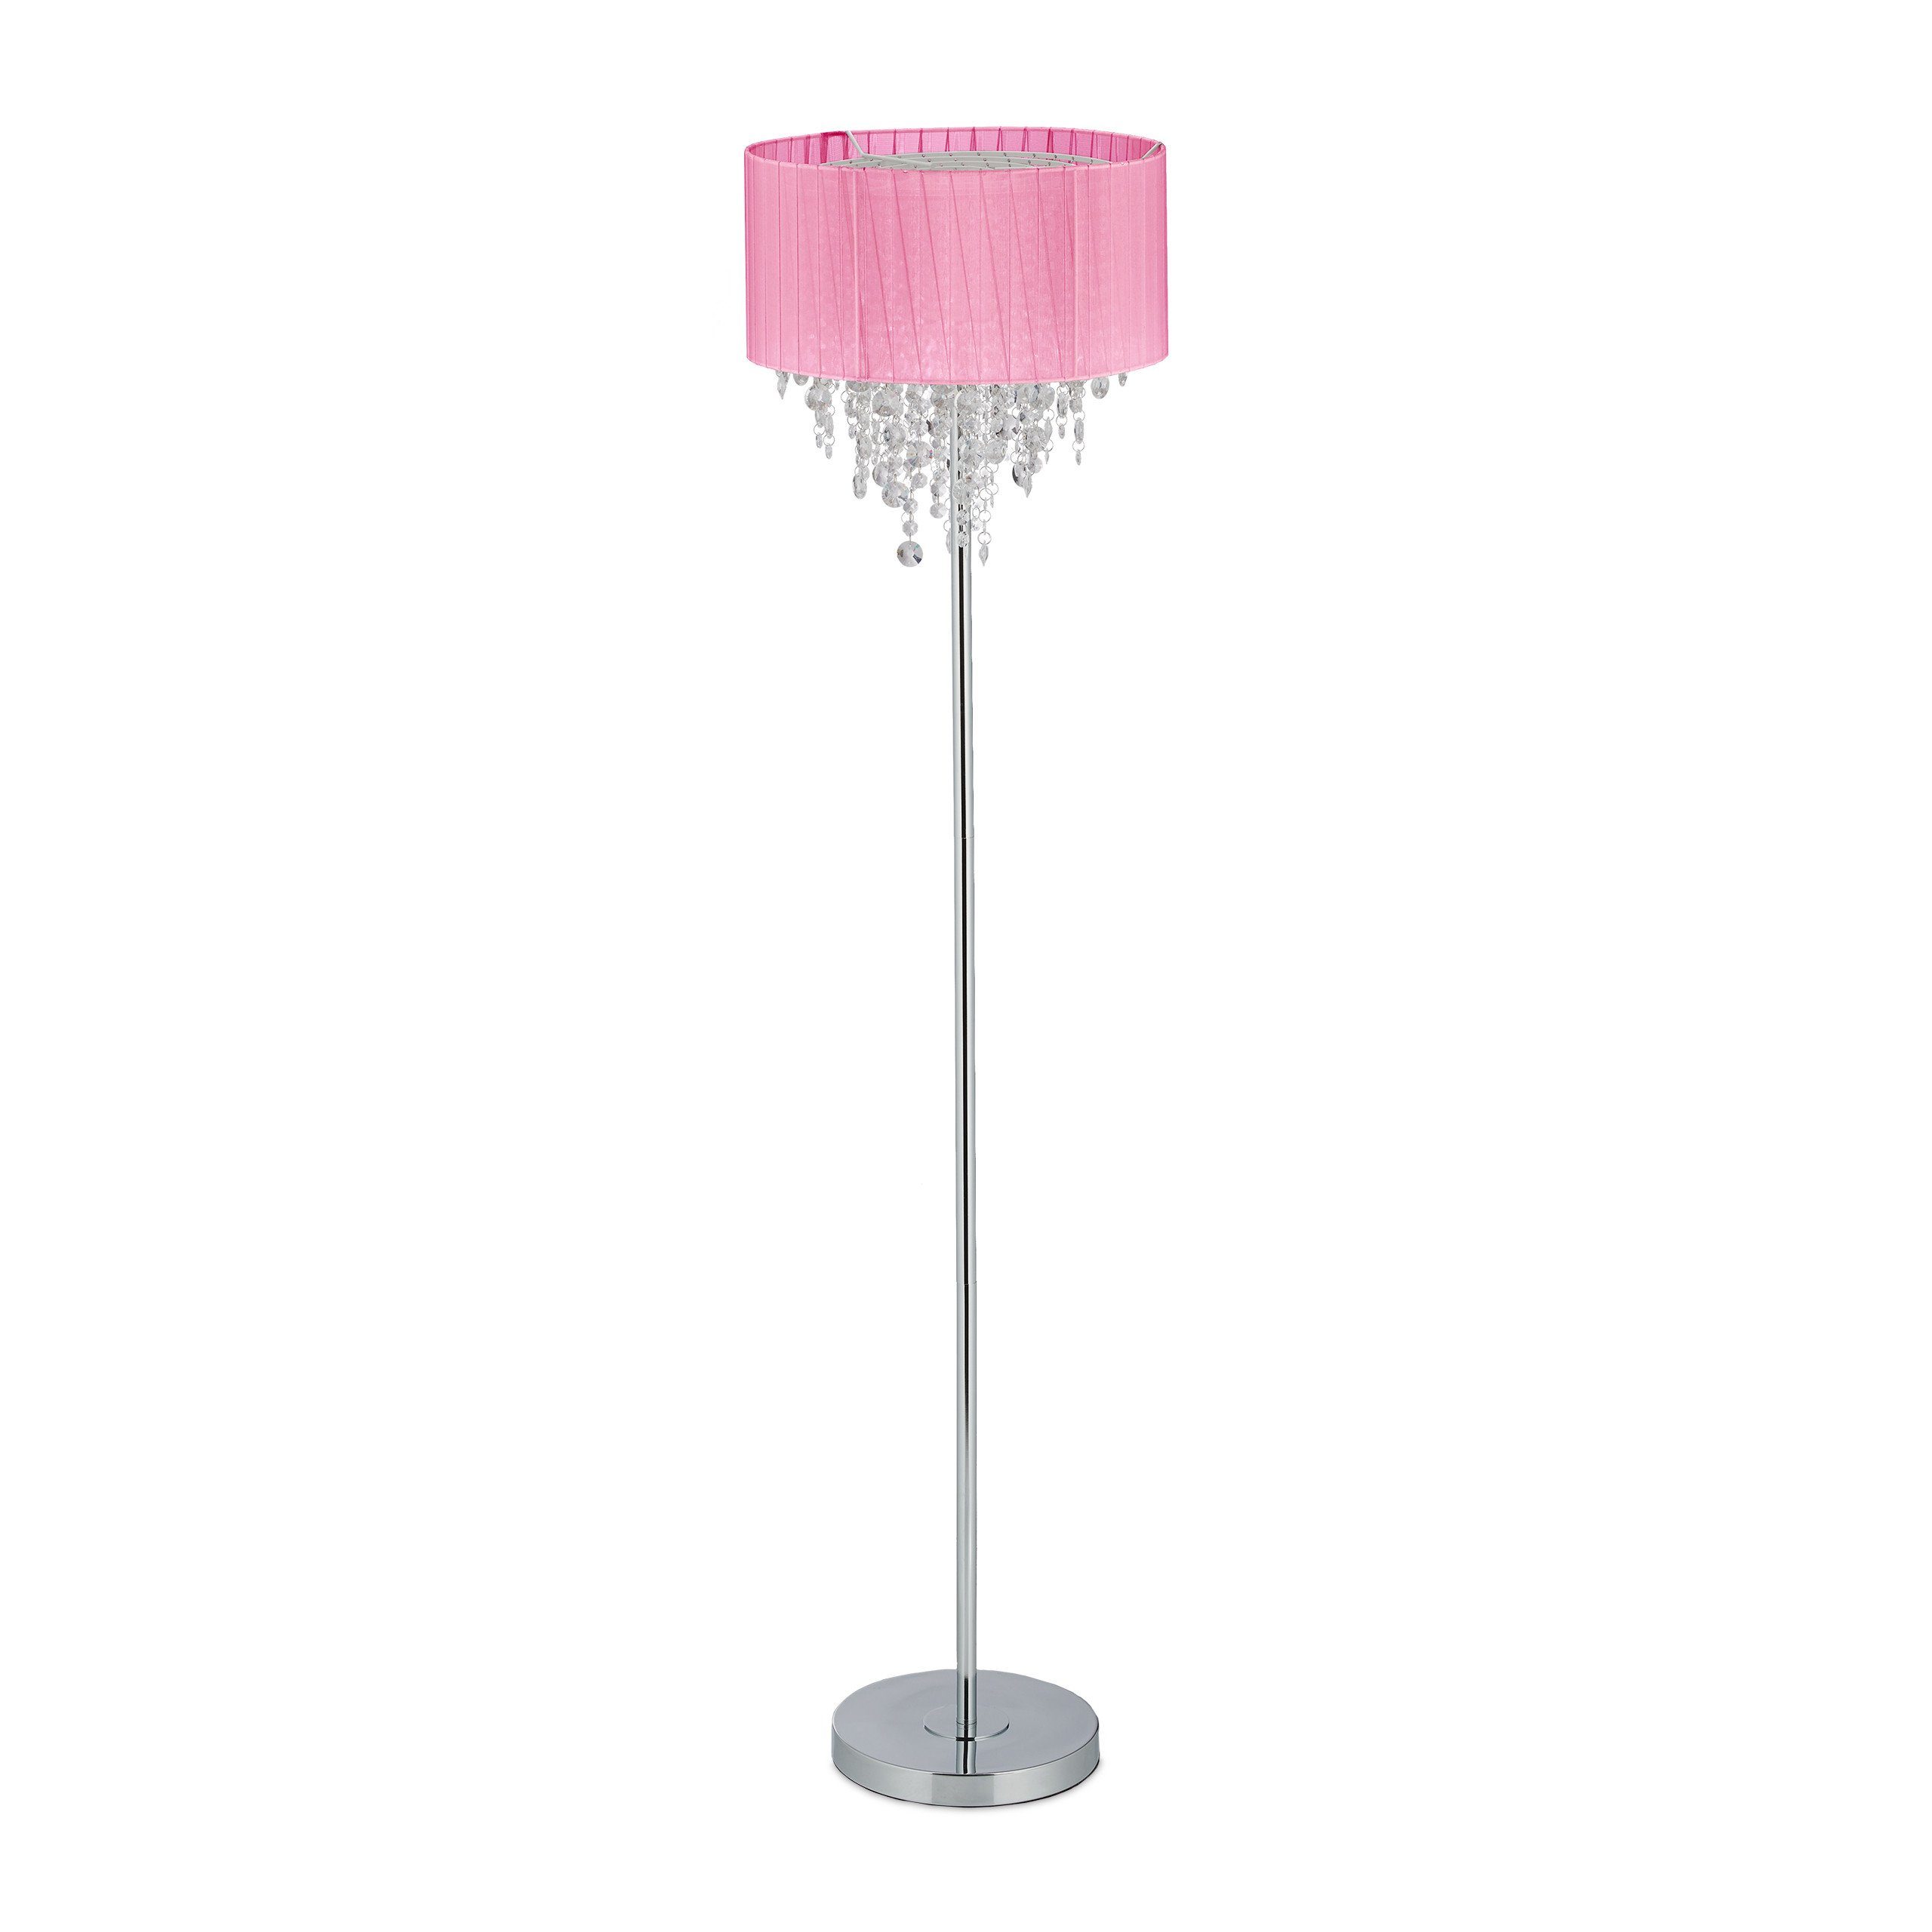 relaxdays Stehlampe Stehlampe mit Kristallen in Rosa, Ohne Leuchtmittel